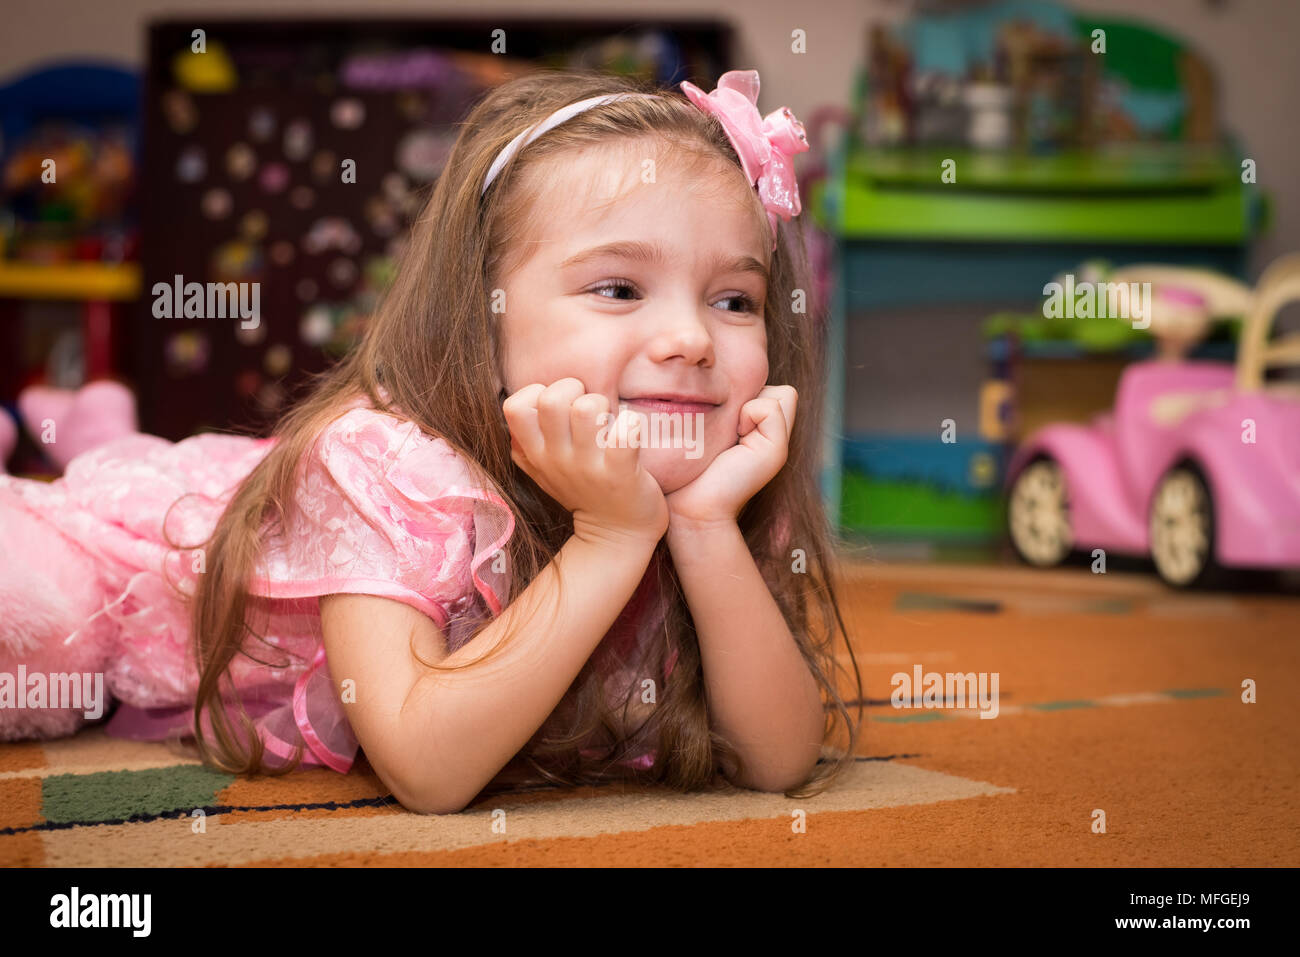 Petite fille dans une robe rose se trouve sur le sol avec un jouet Banque D'Images